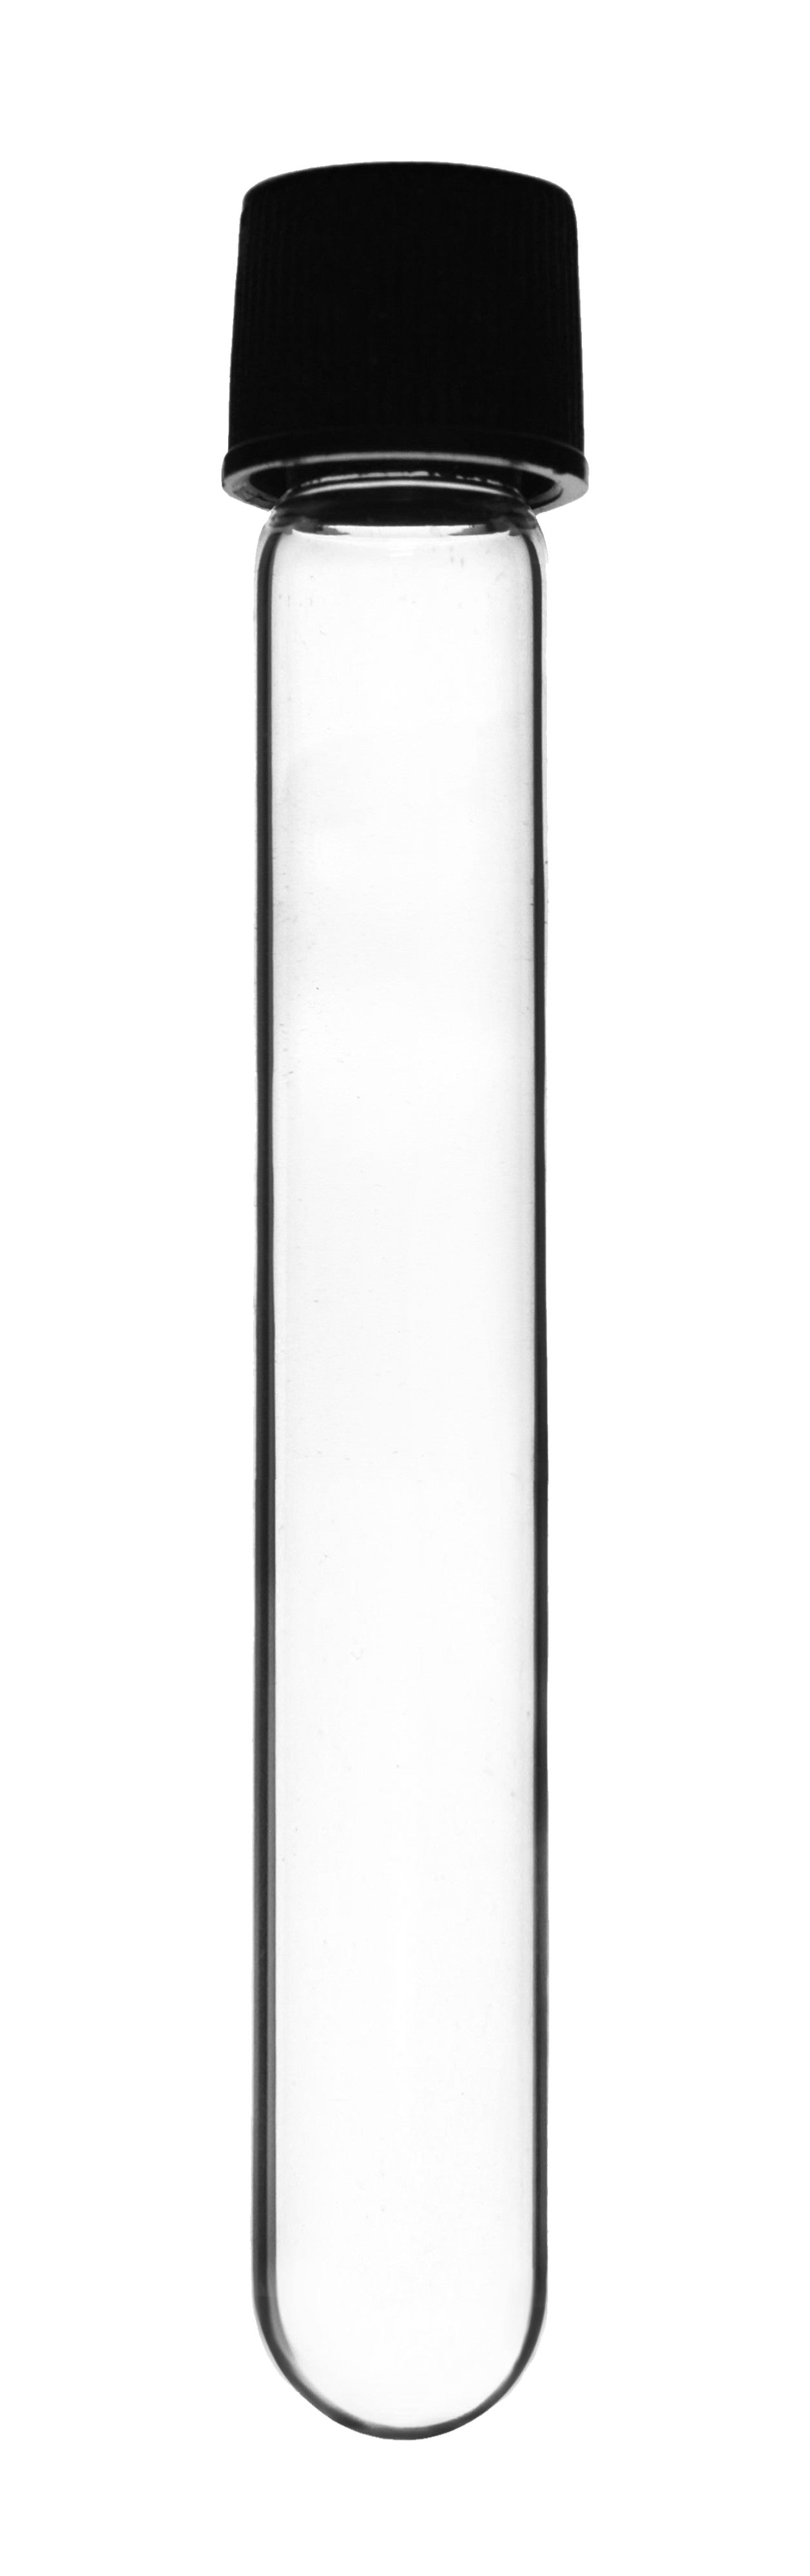 Borosilicate Glass Test Tubes, 10 ml, Round Bottom with Screw Cap